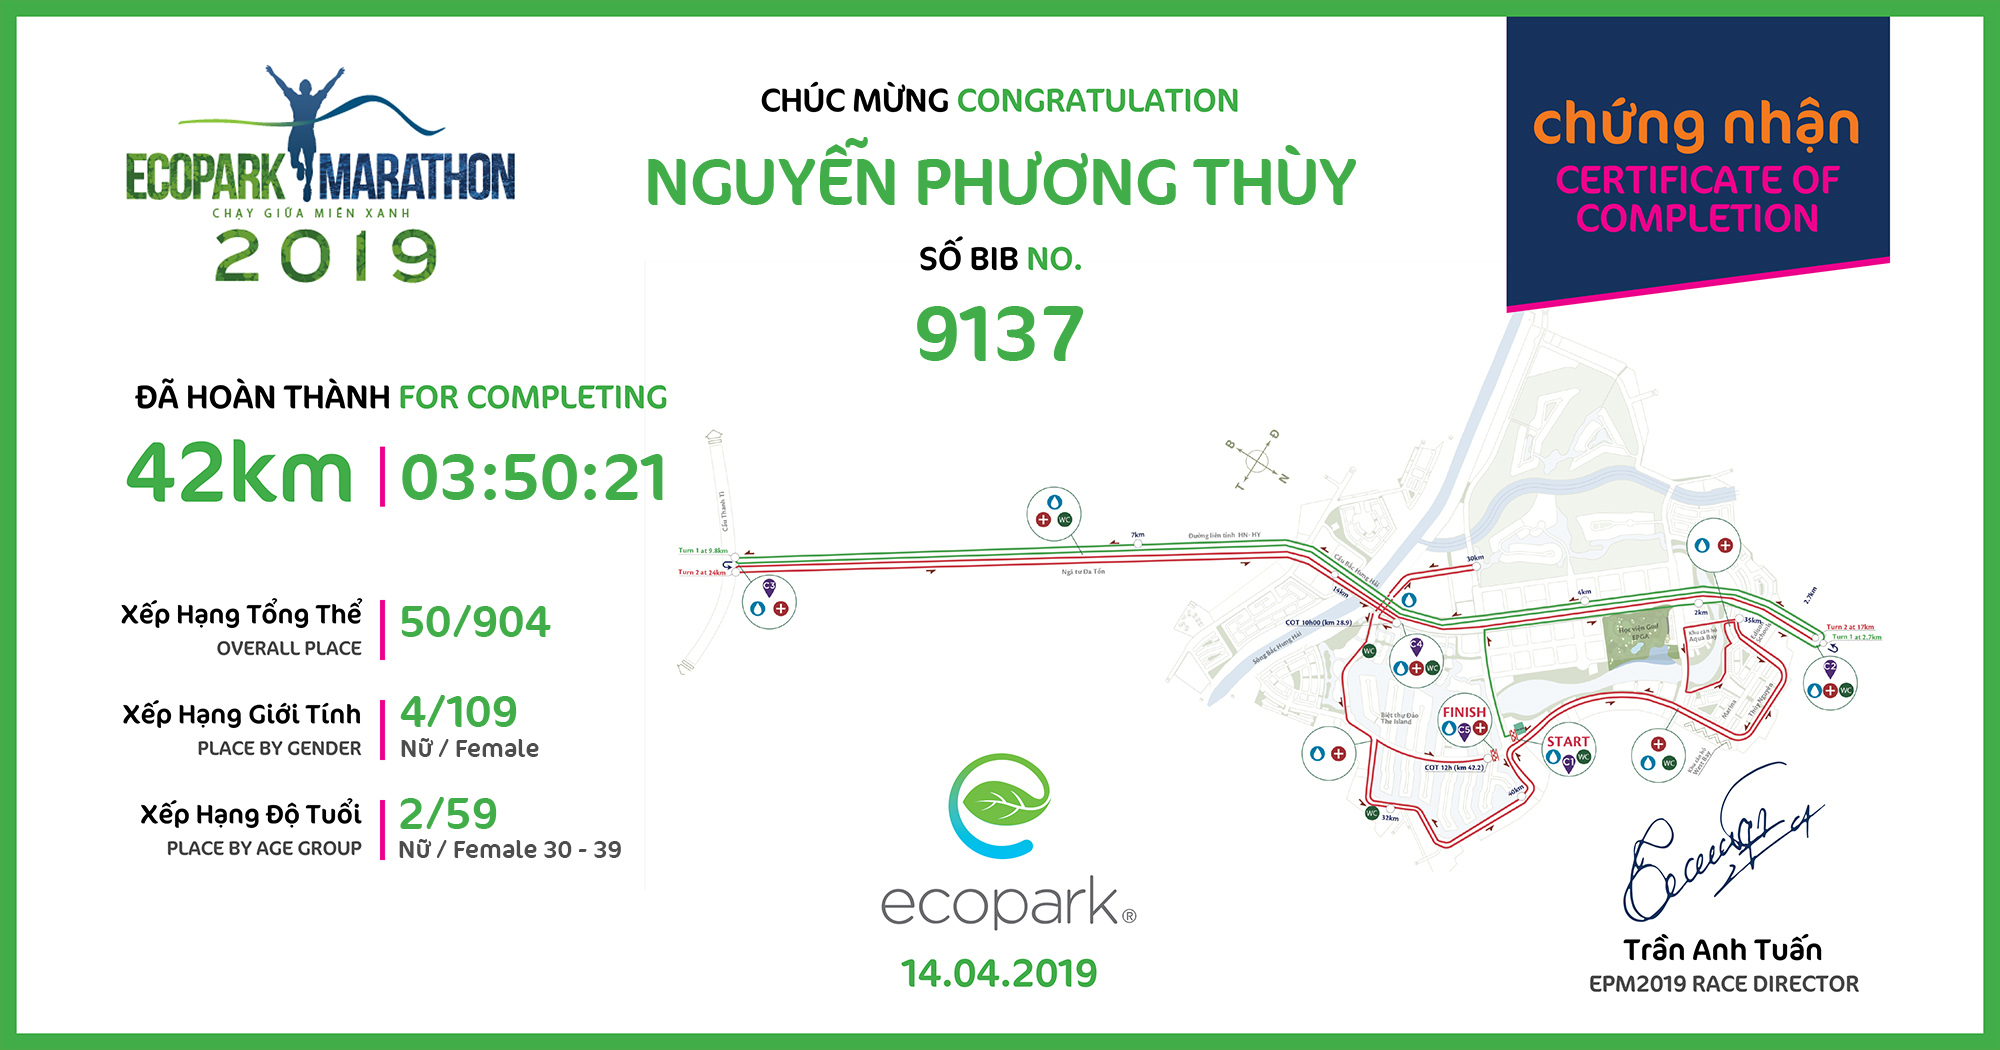 9137 - Nguyễn Phương Thùy